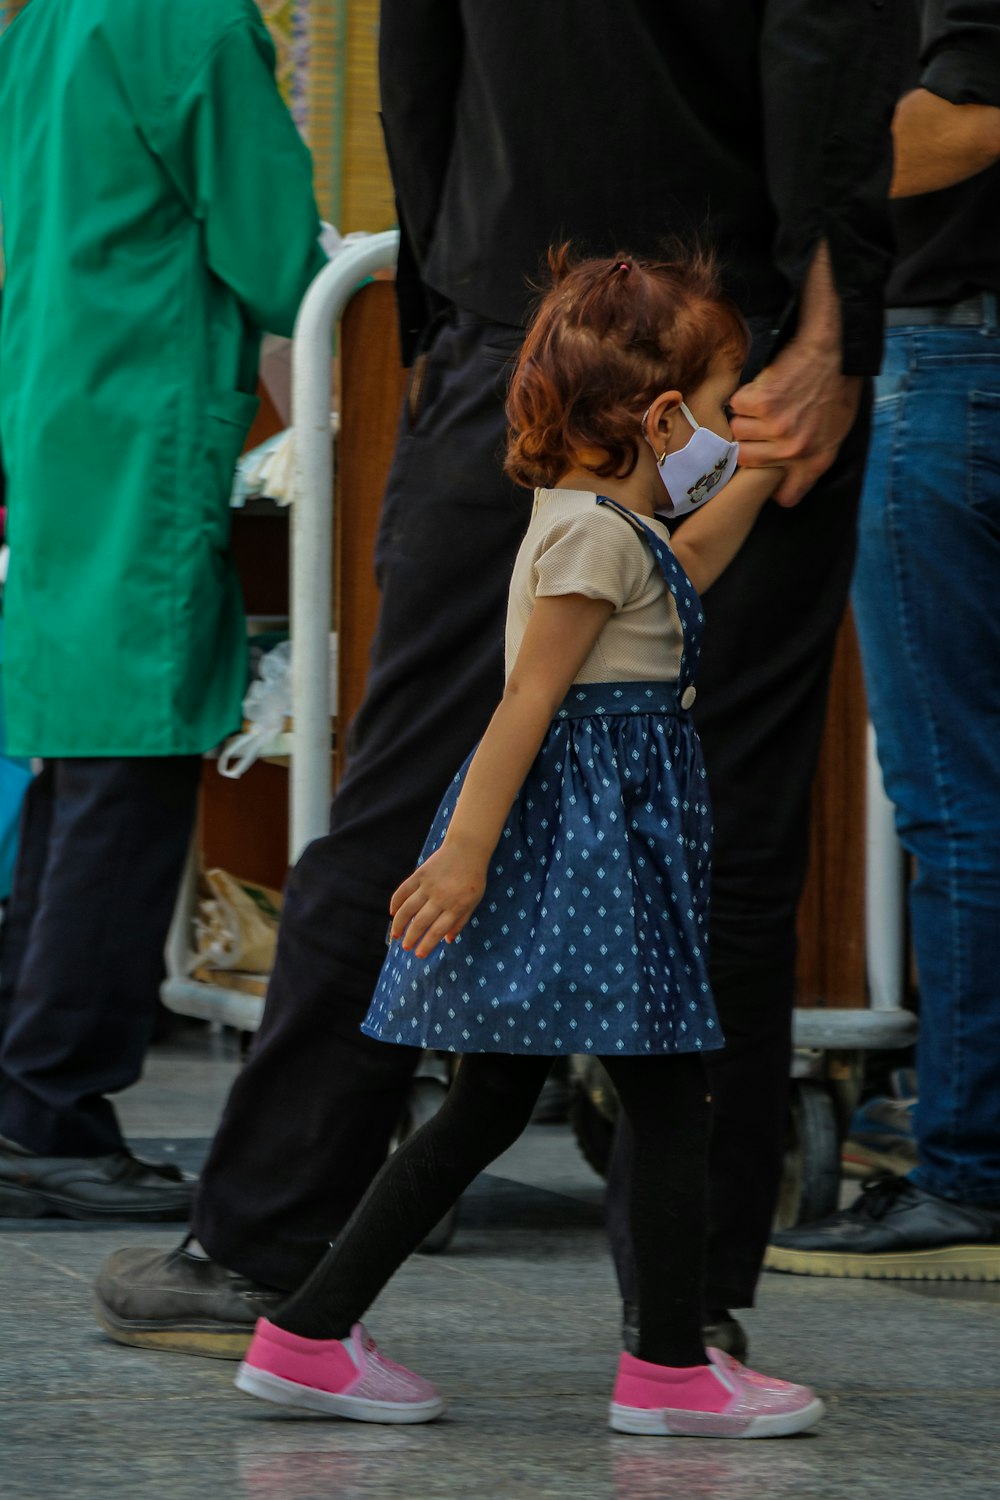 a little girl walking down a street next to a man